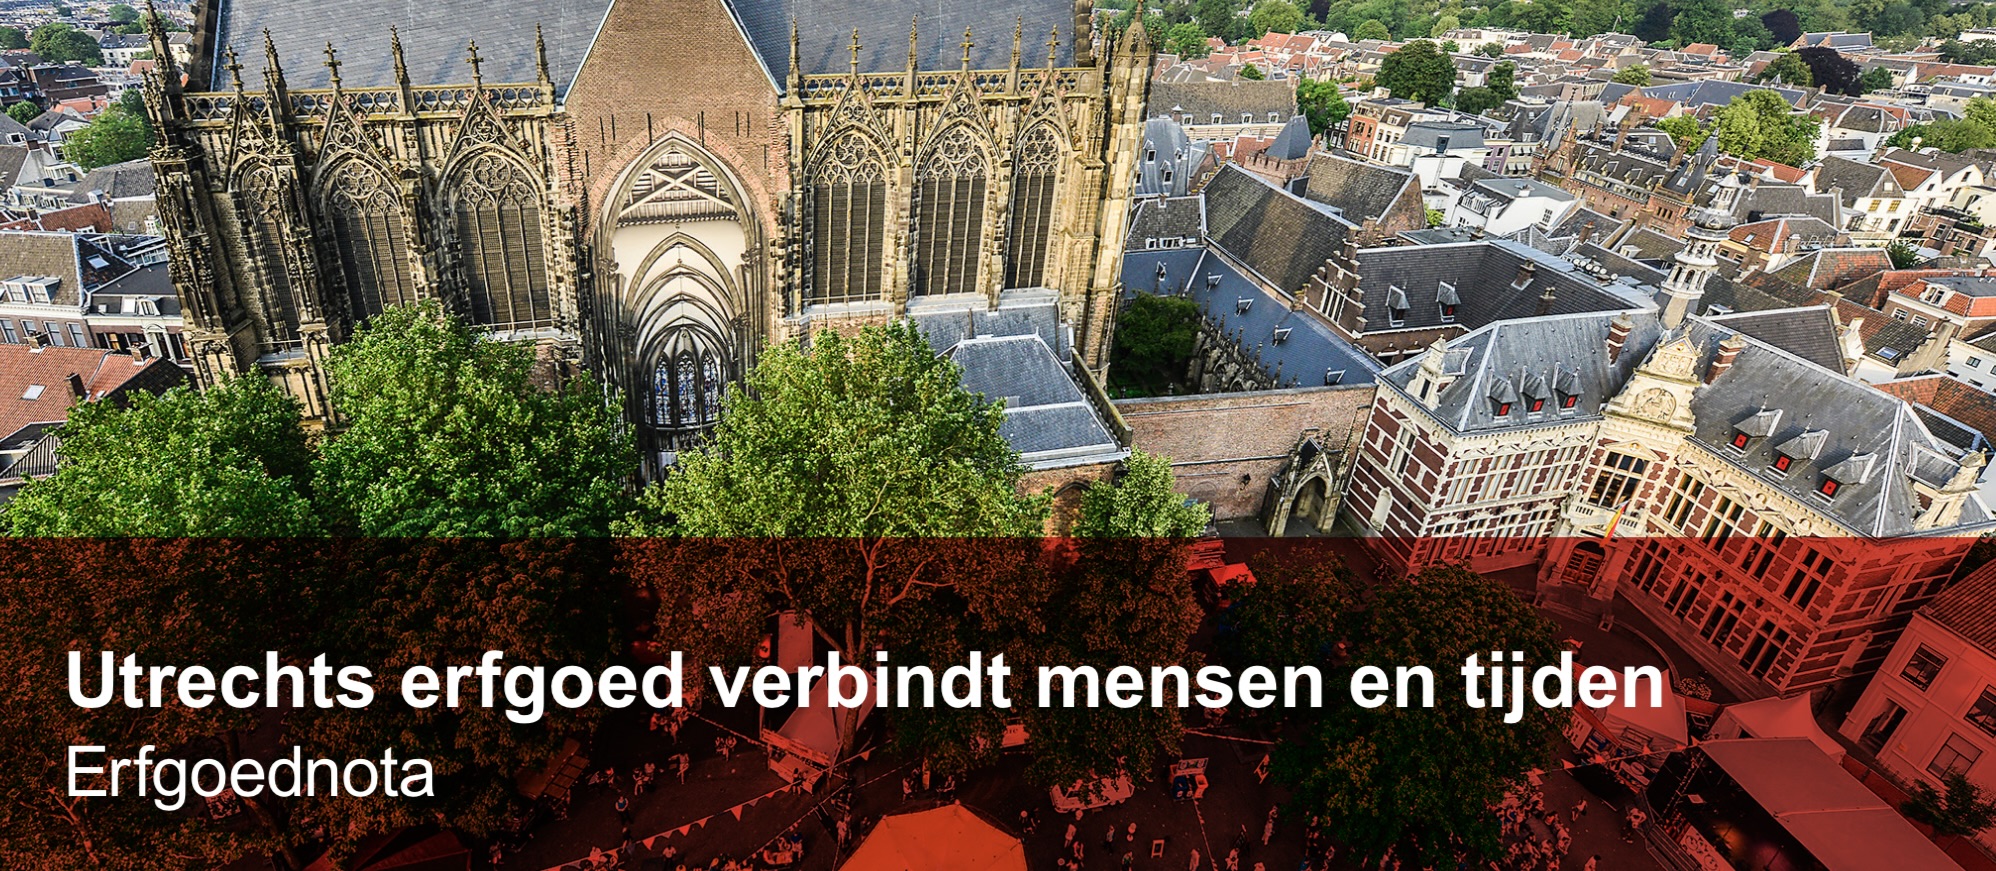 Erfgoednota Gemeente Utrecht